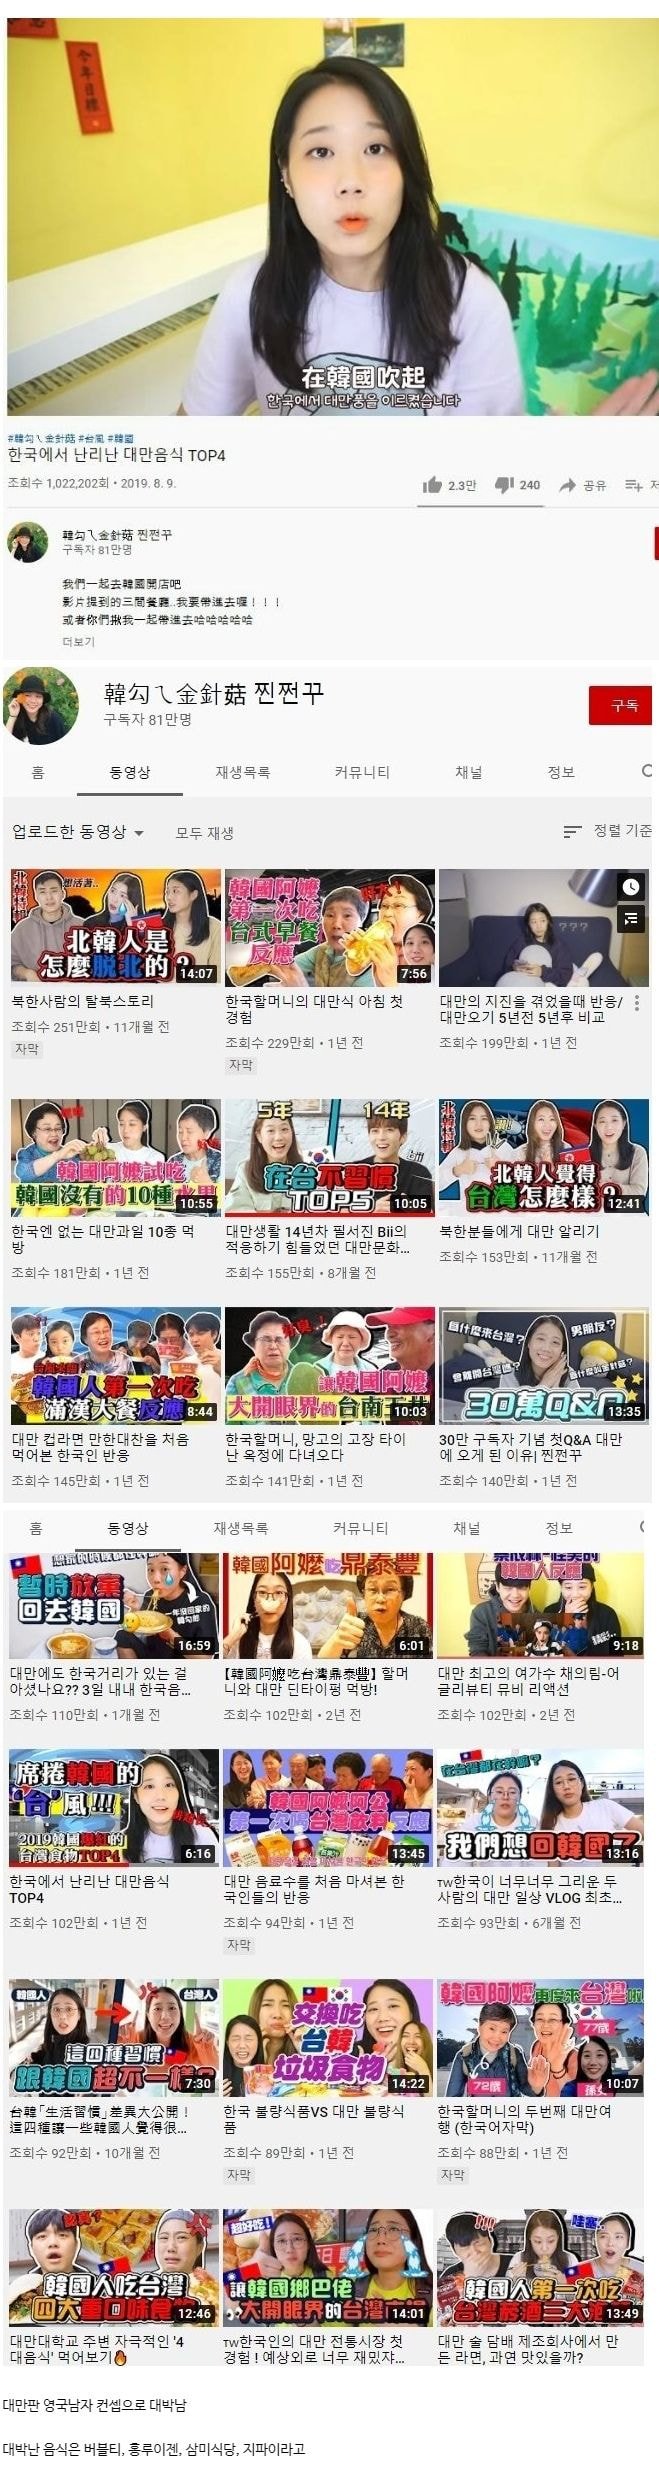 대만에서 대박난 한국 유튜버